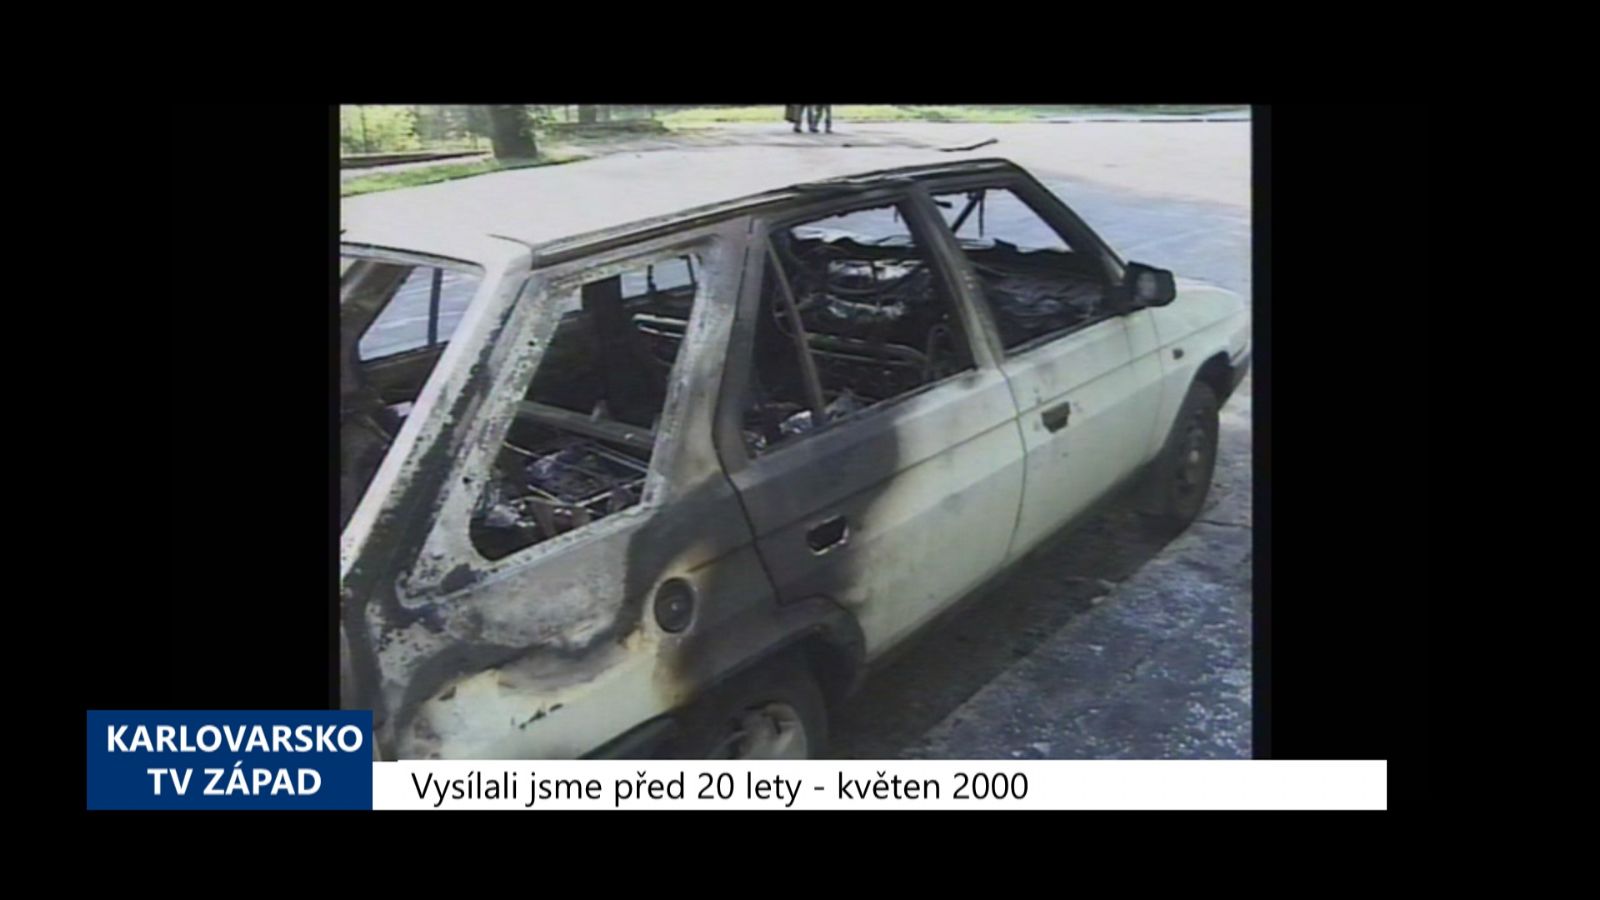 2000 – Cheb: Zloděj si v autě svítil zapalovačem, vozidlo shořelo (TV Západ)